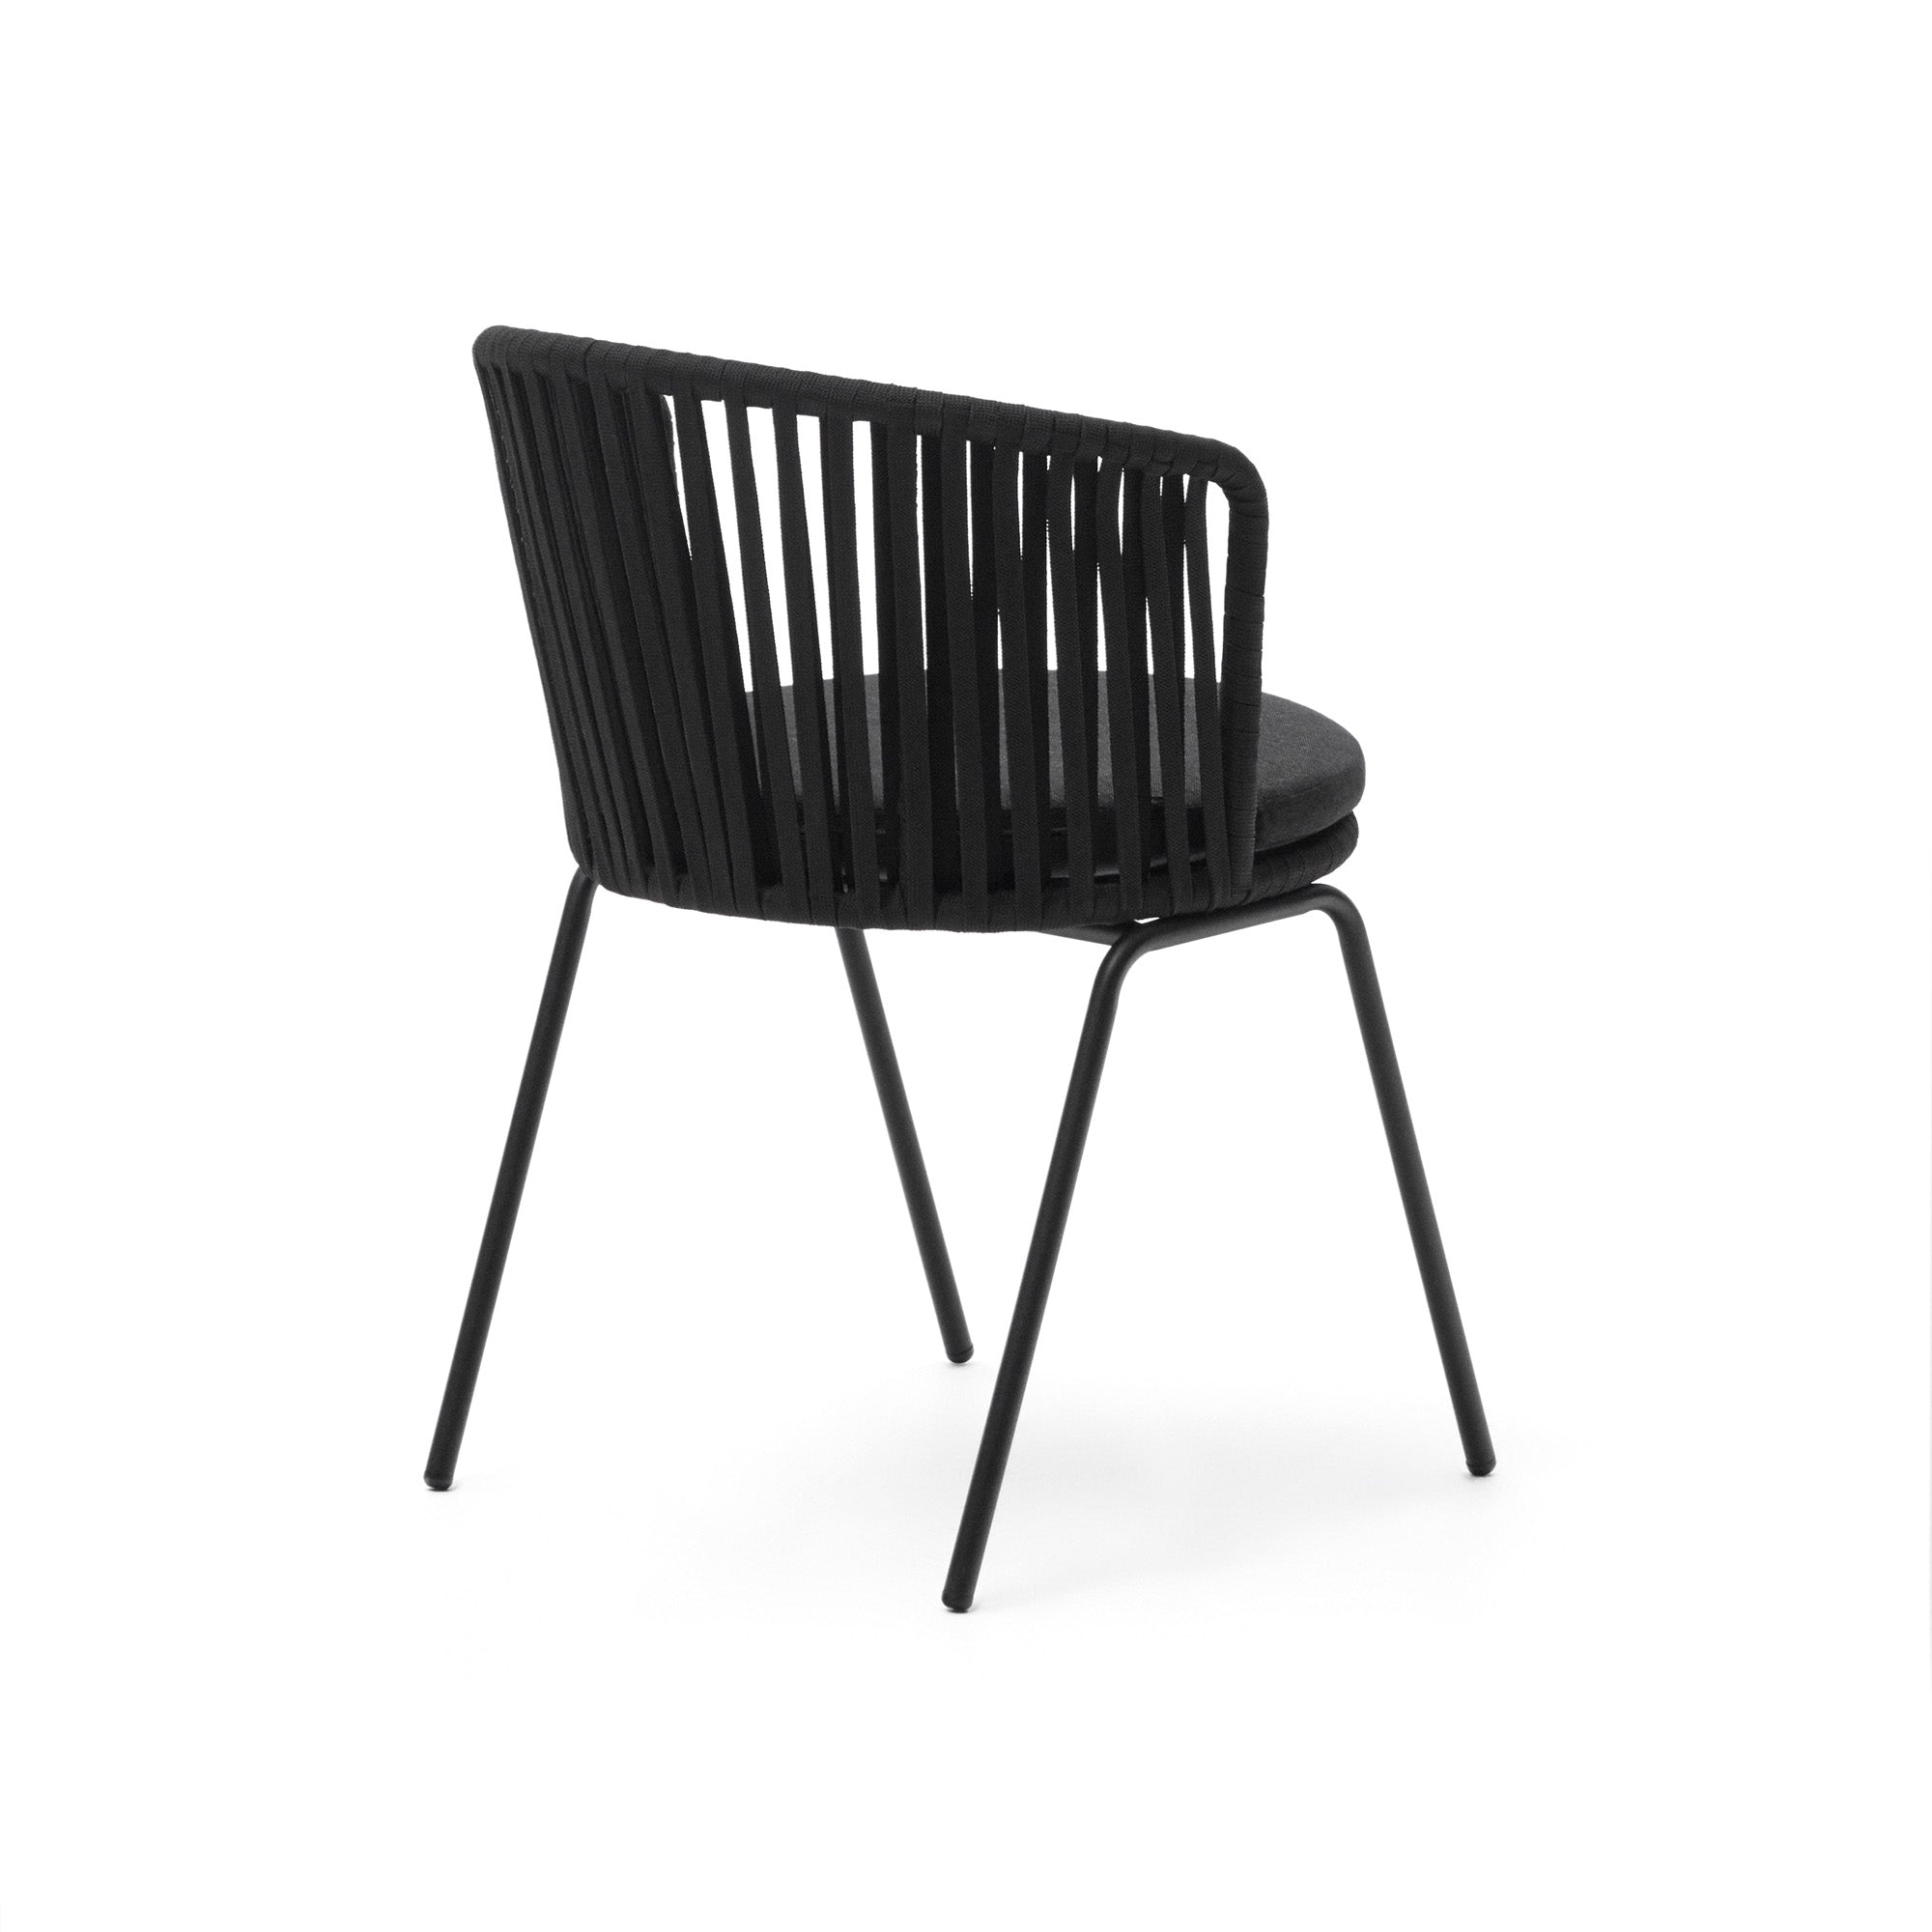 Saconca kültéri szék zsinórral és acélból. fekete festett kivitelben.